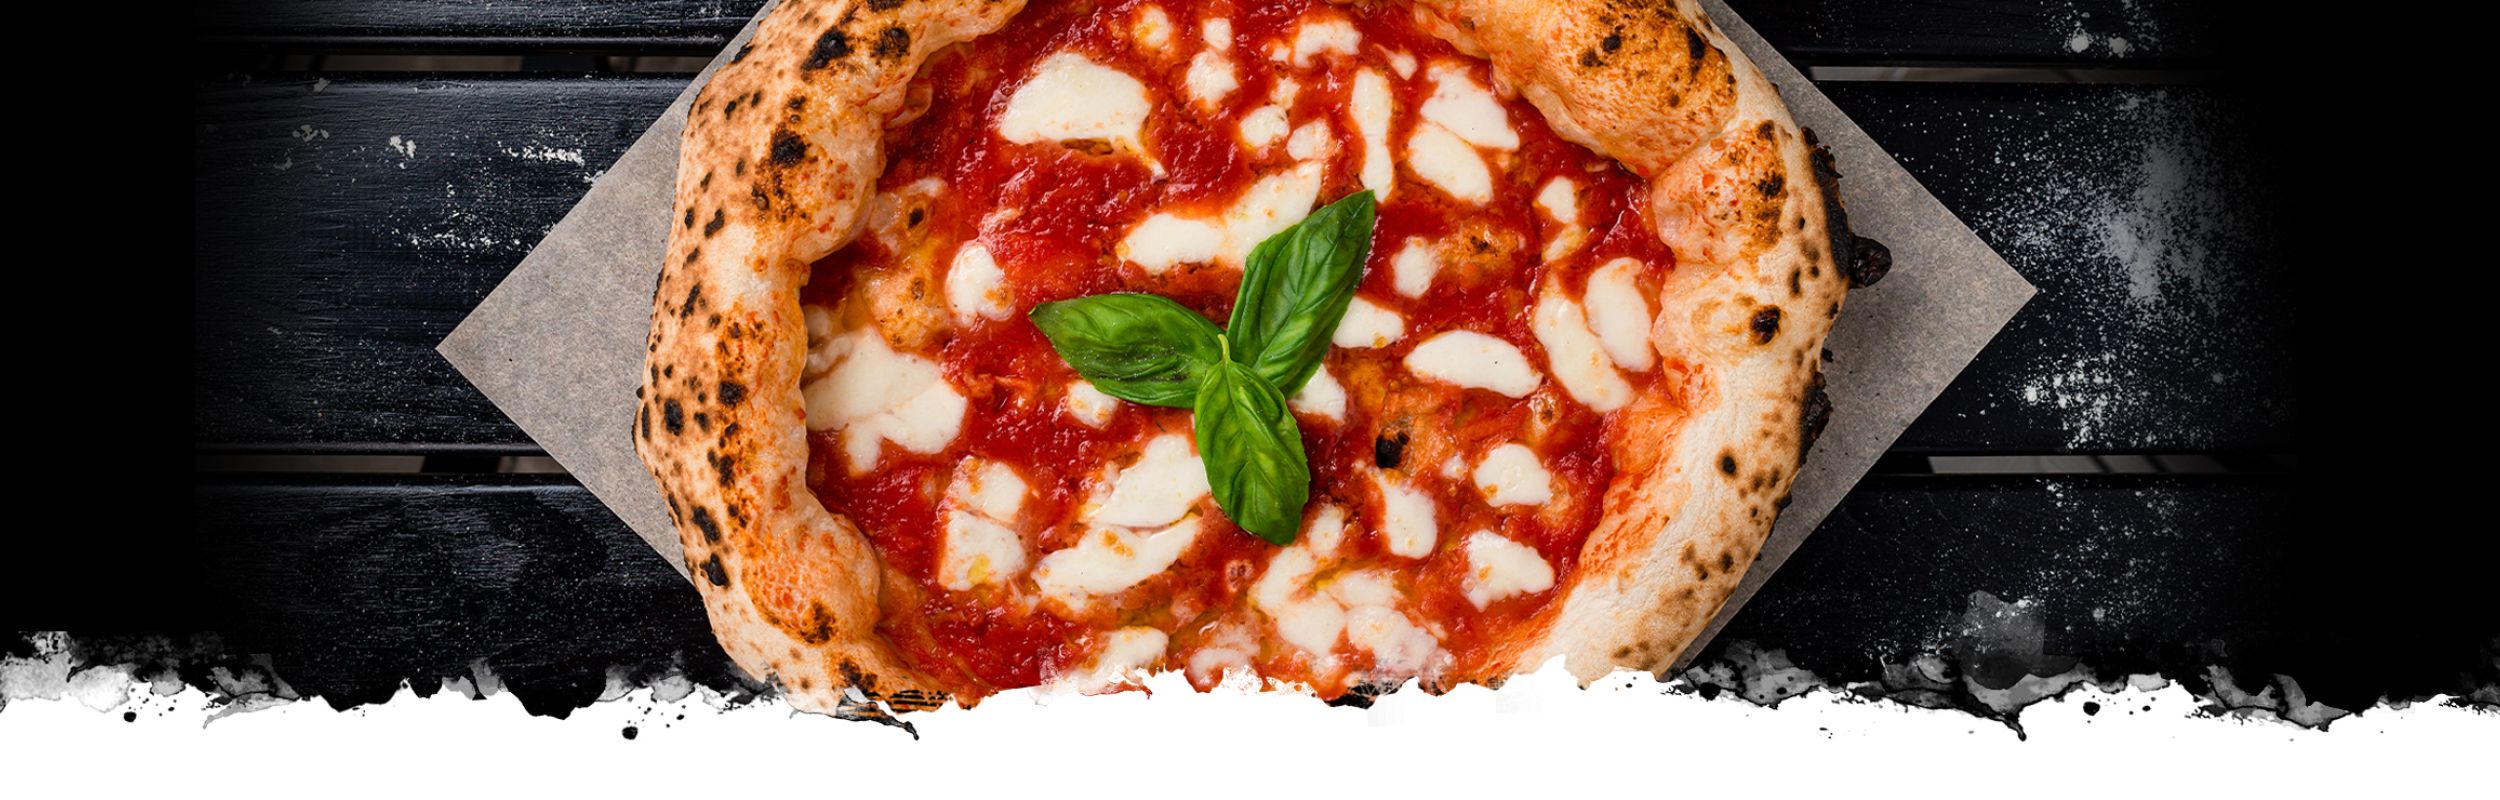 Saporè - Pizza d'eccellenza da asporto e domicilio!